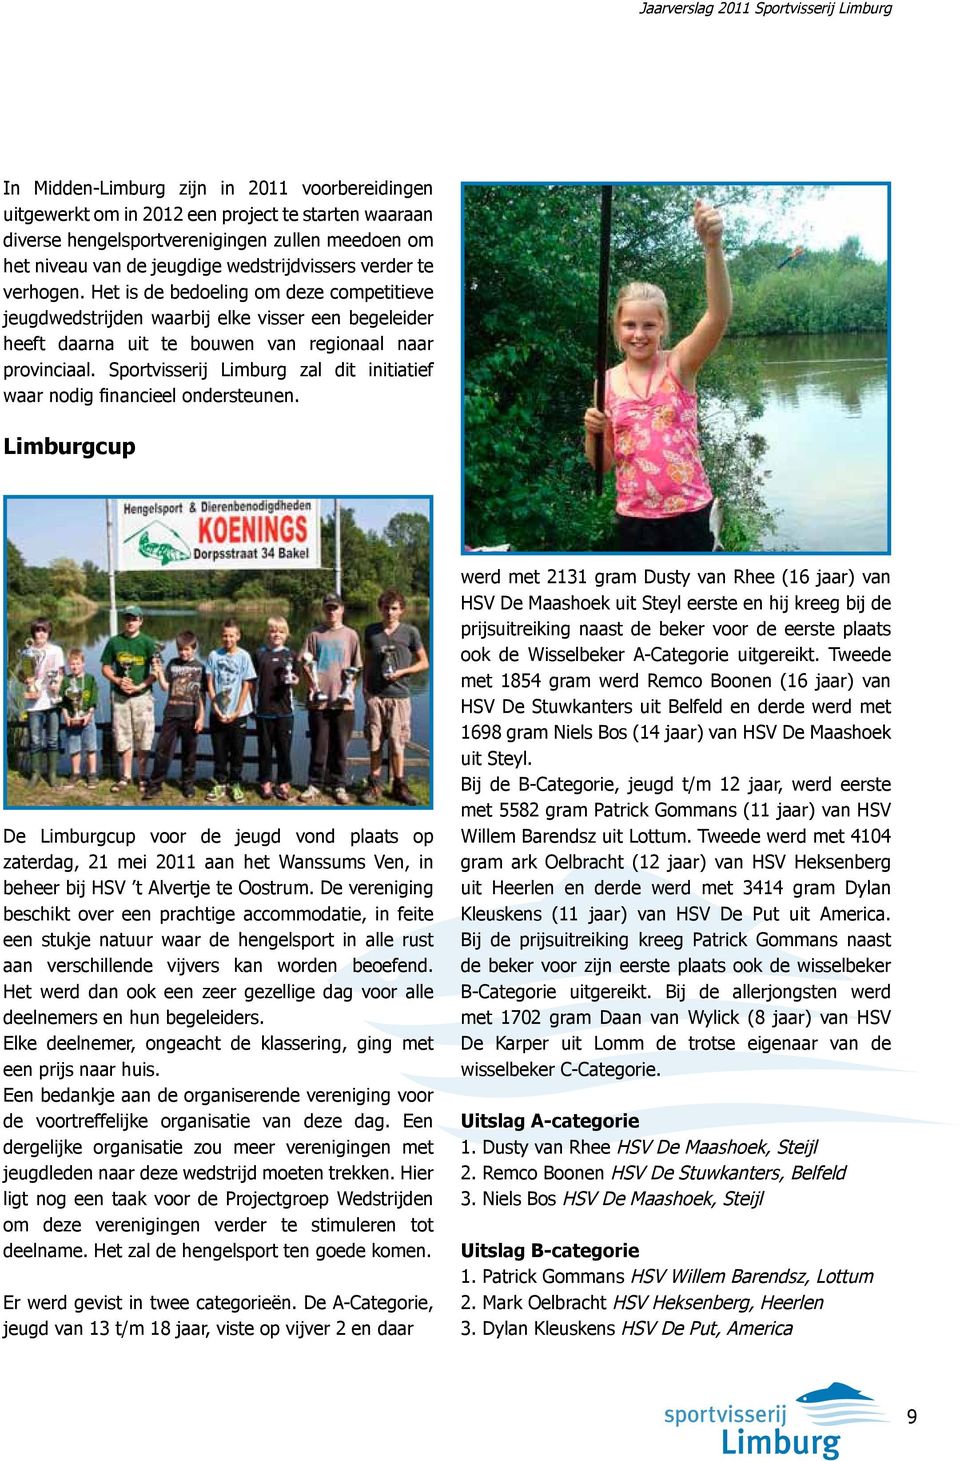 Sportvisserij Limburg zal dit initiatief waar nodig financieel ondersteunen.